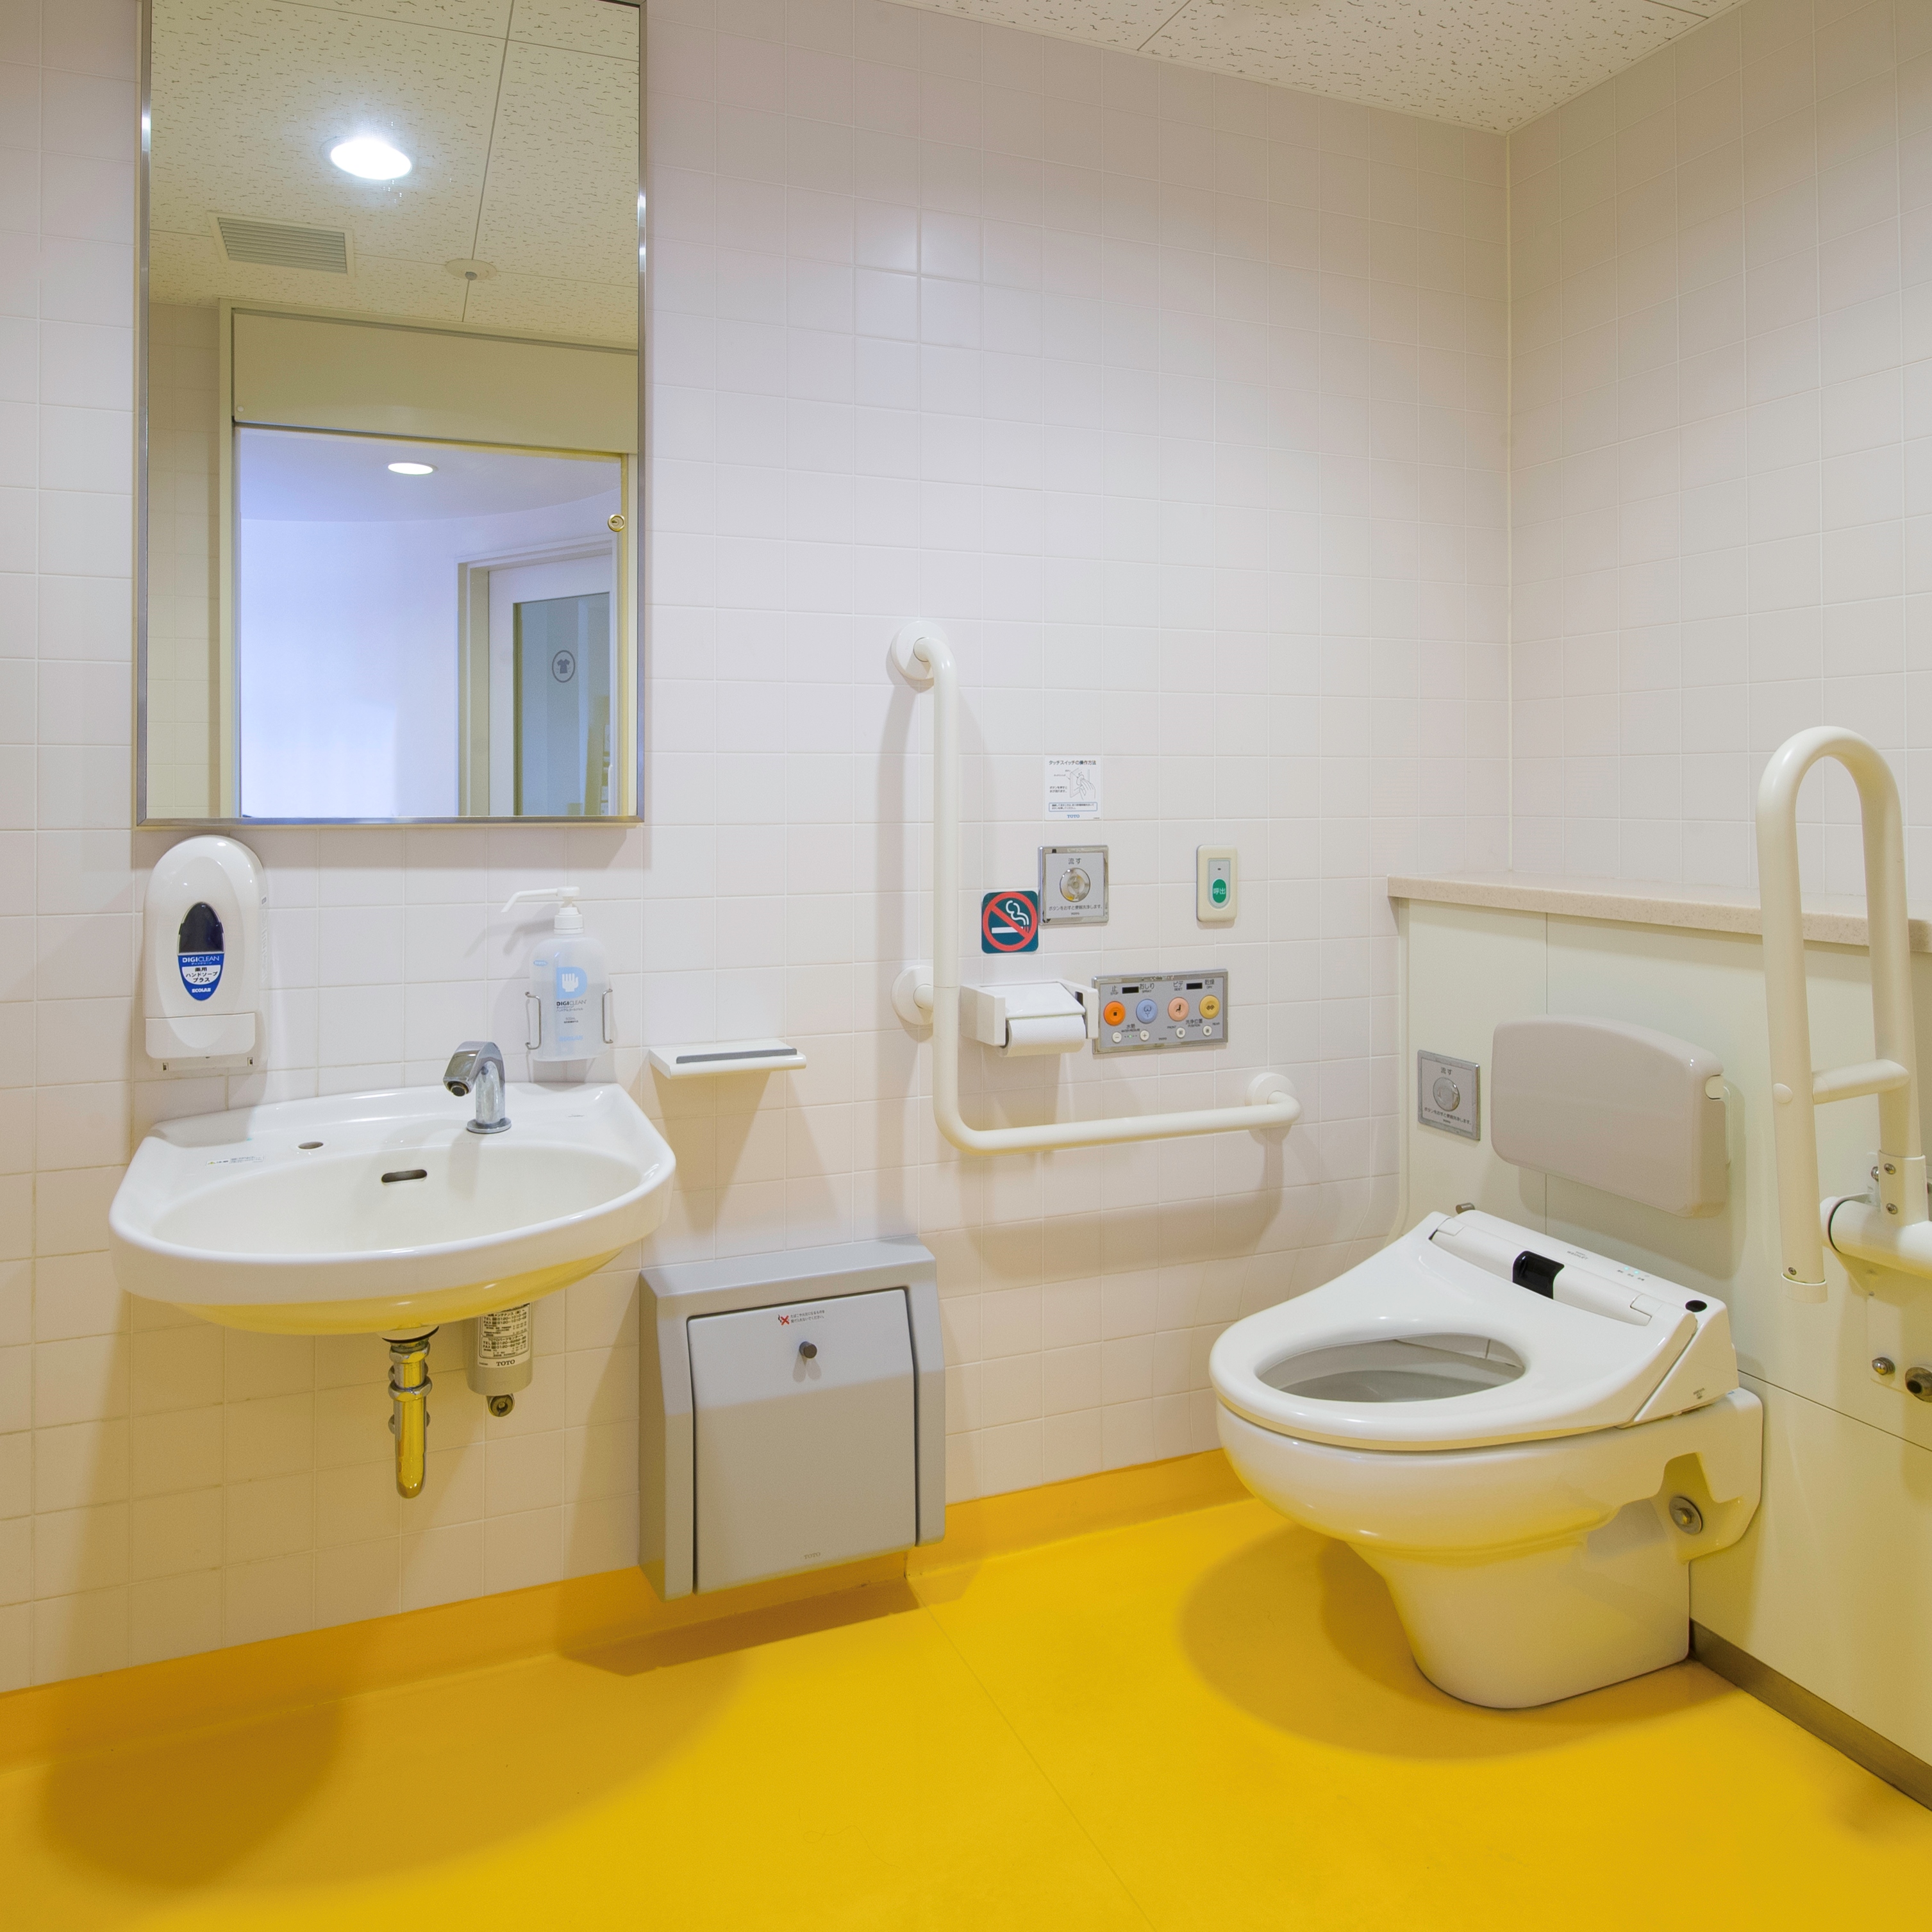 ◆パブリックトイレ◆　フロント階にバリアフリー対応トイレをご用意しています。